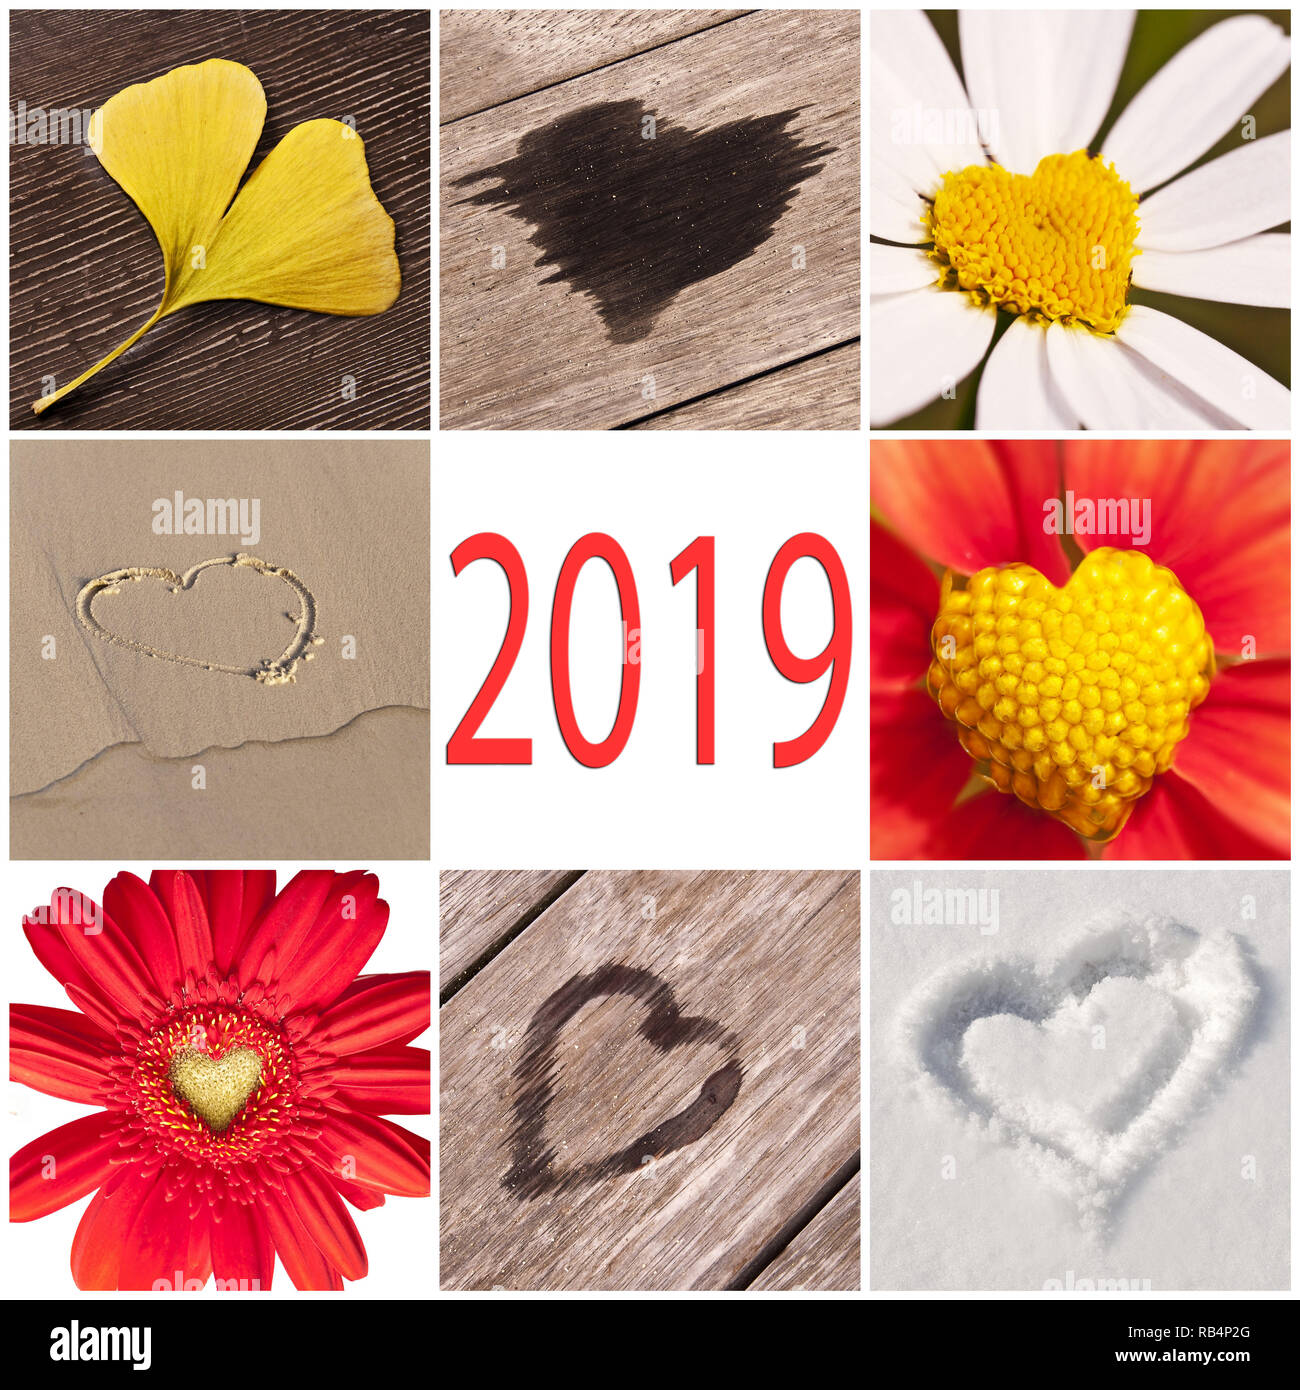 En 2019, collection de coeurs liés avec la nature, le nouvel an et la Saint-Valentin concept Banque D'Images